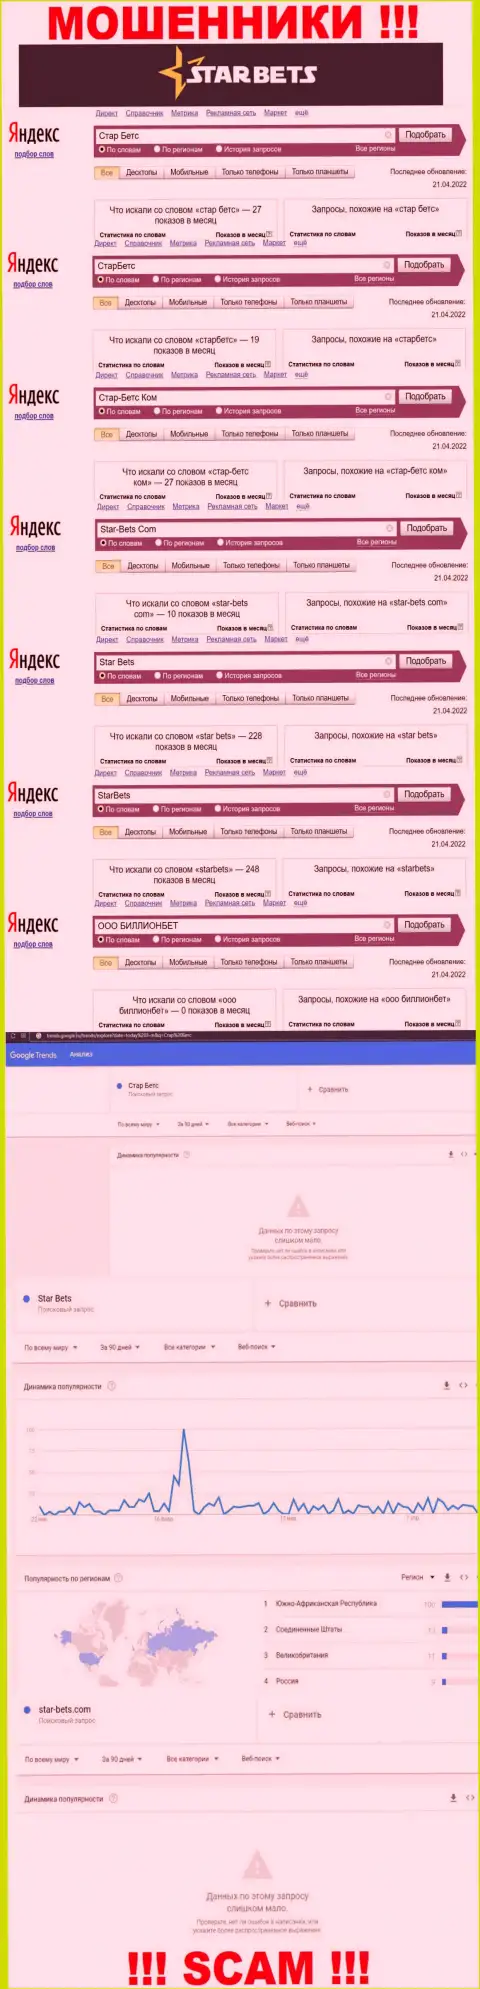 Скрин результатов онлайн запросов по жульнической организации Стар Бетс